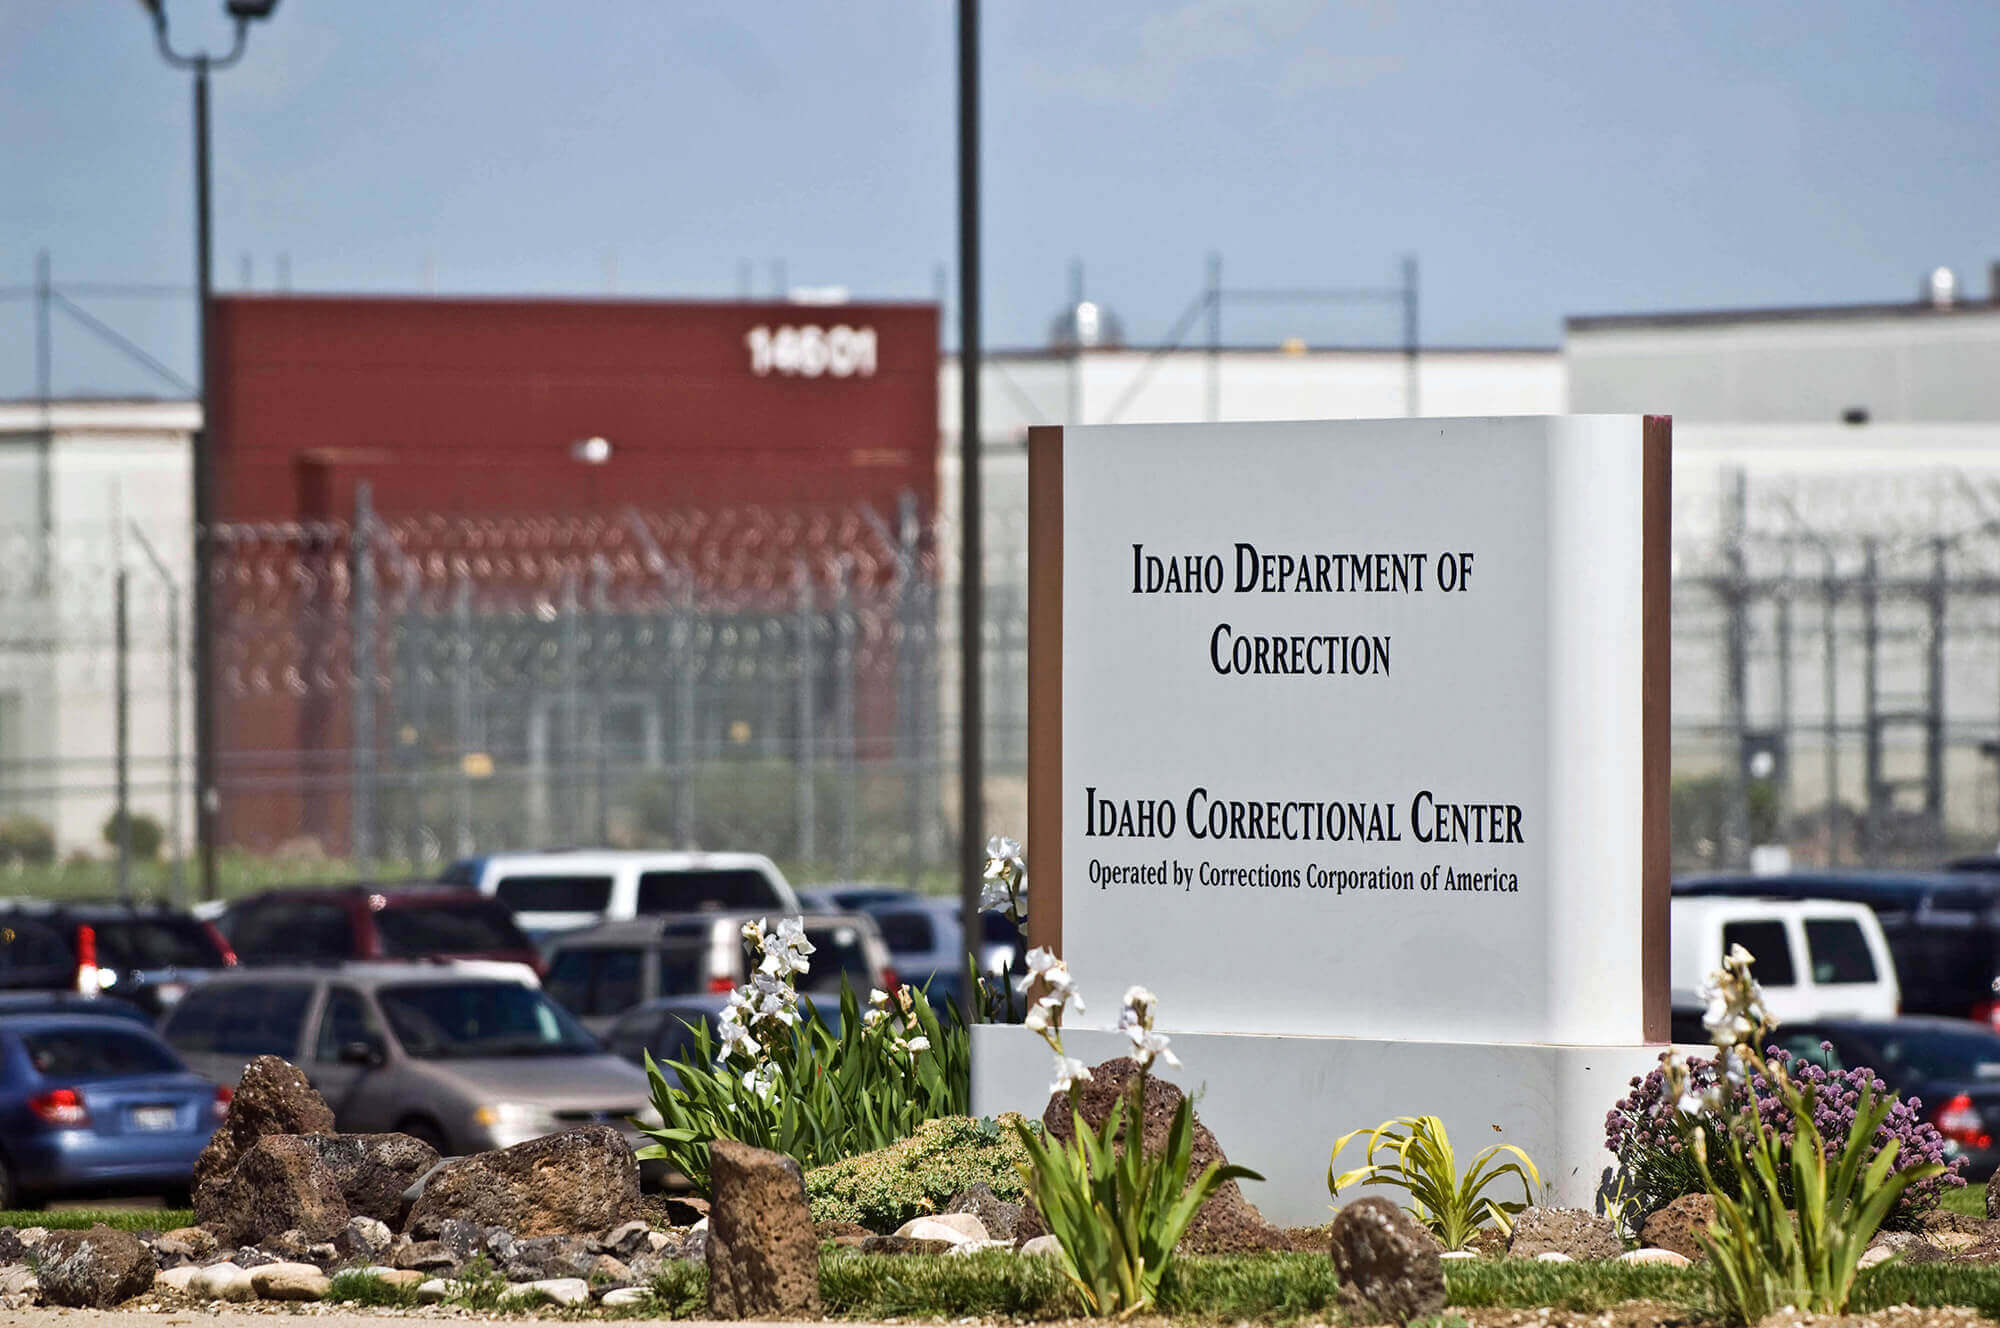 Image of Idaho Correctional Center, Boise Idaho